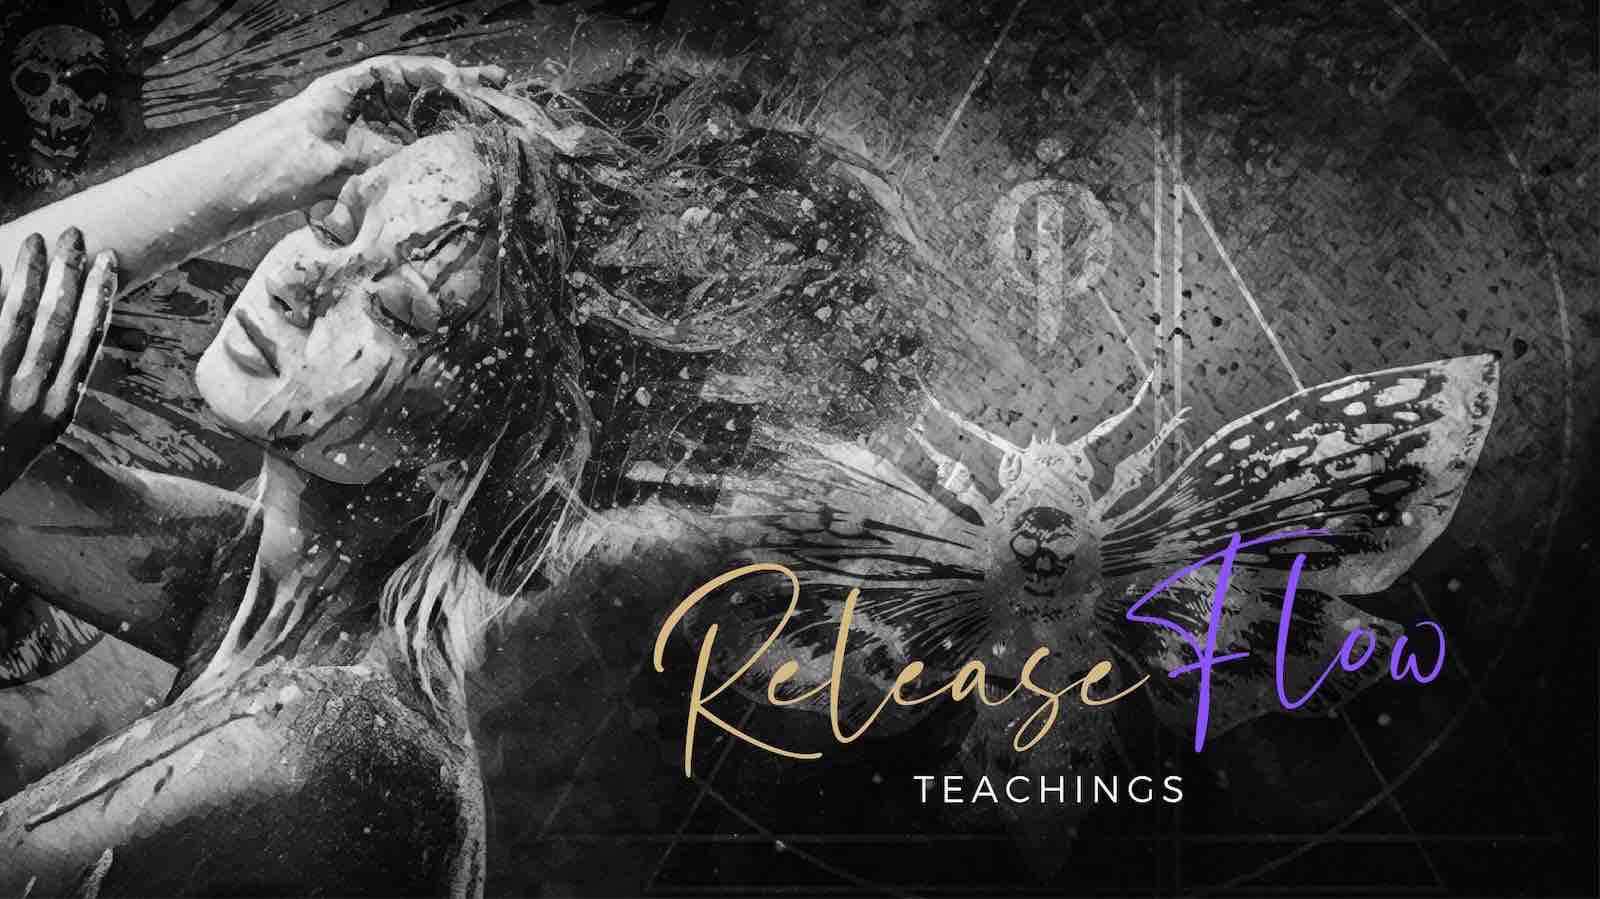 Release flow teachings